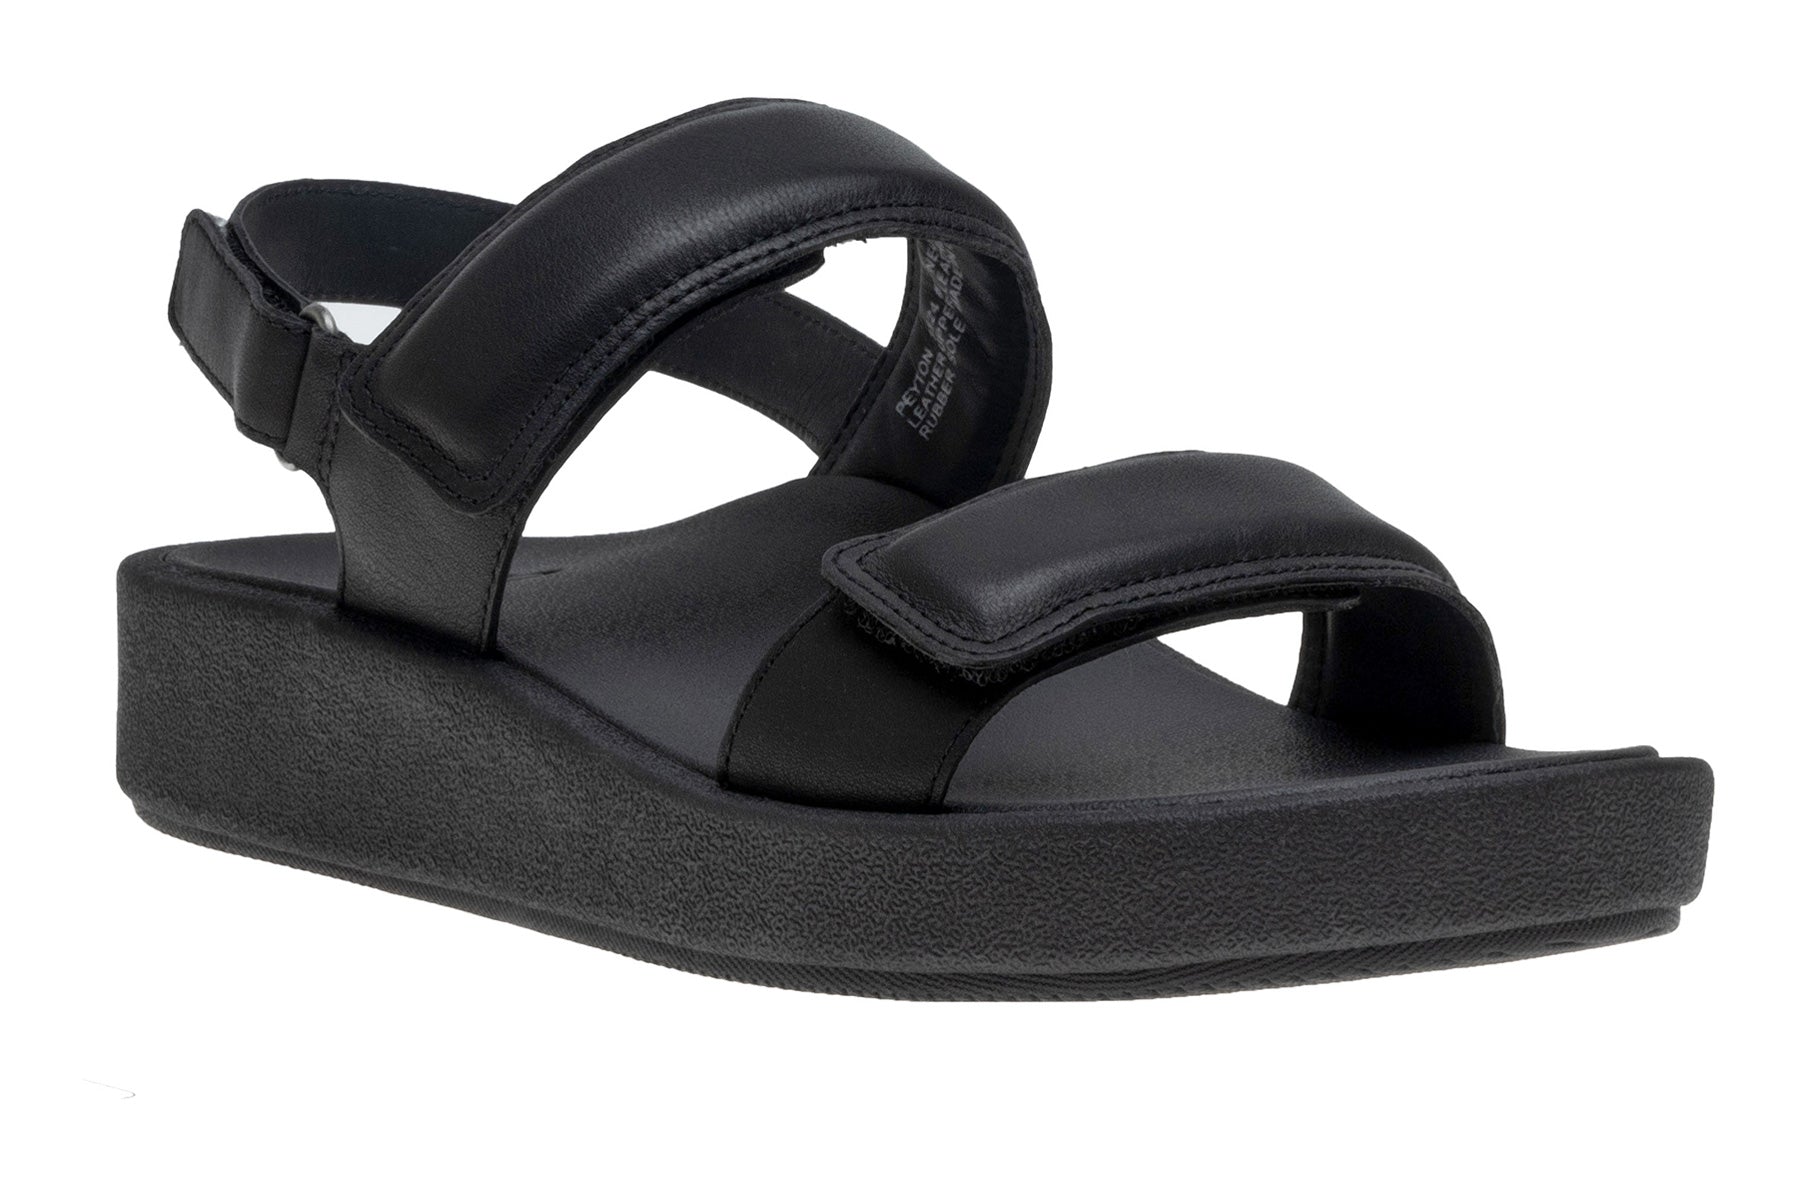 ABEO Paseo Sandal Metatarsal - ABEO Footwear